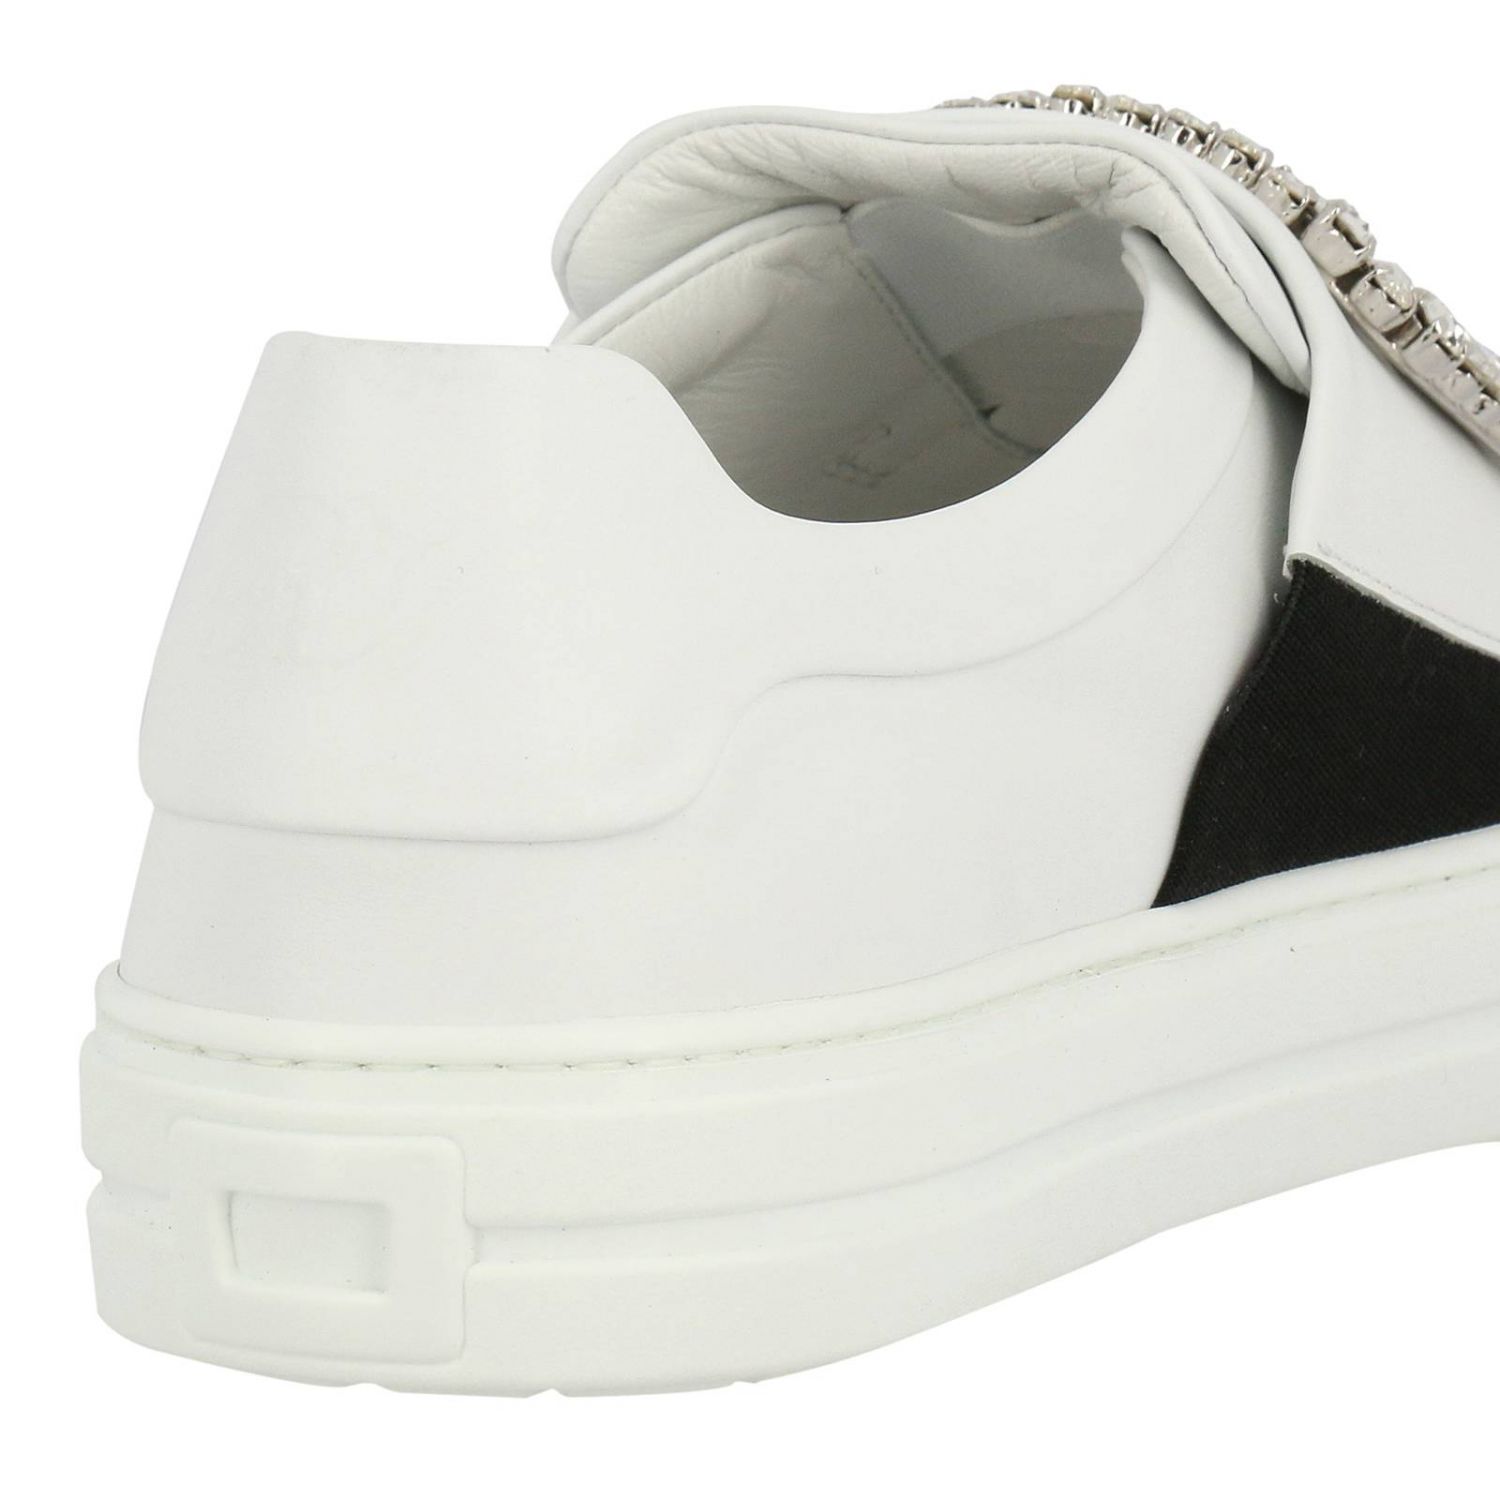 Sneakers Roger Vivier: Shoes women Roger Vivier white 4